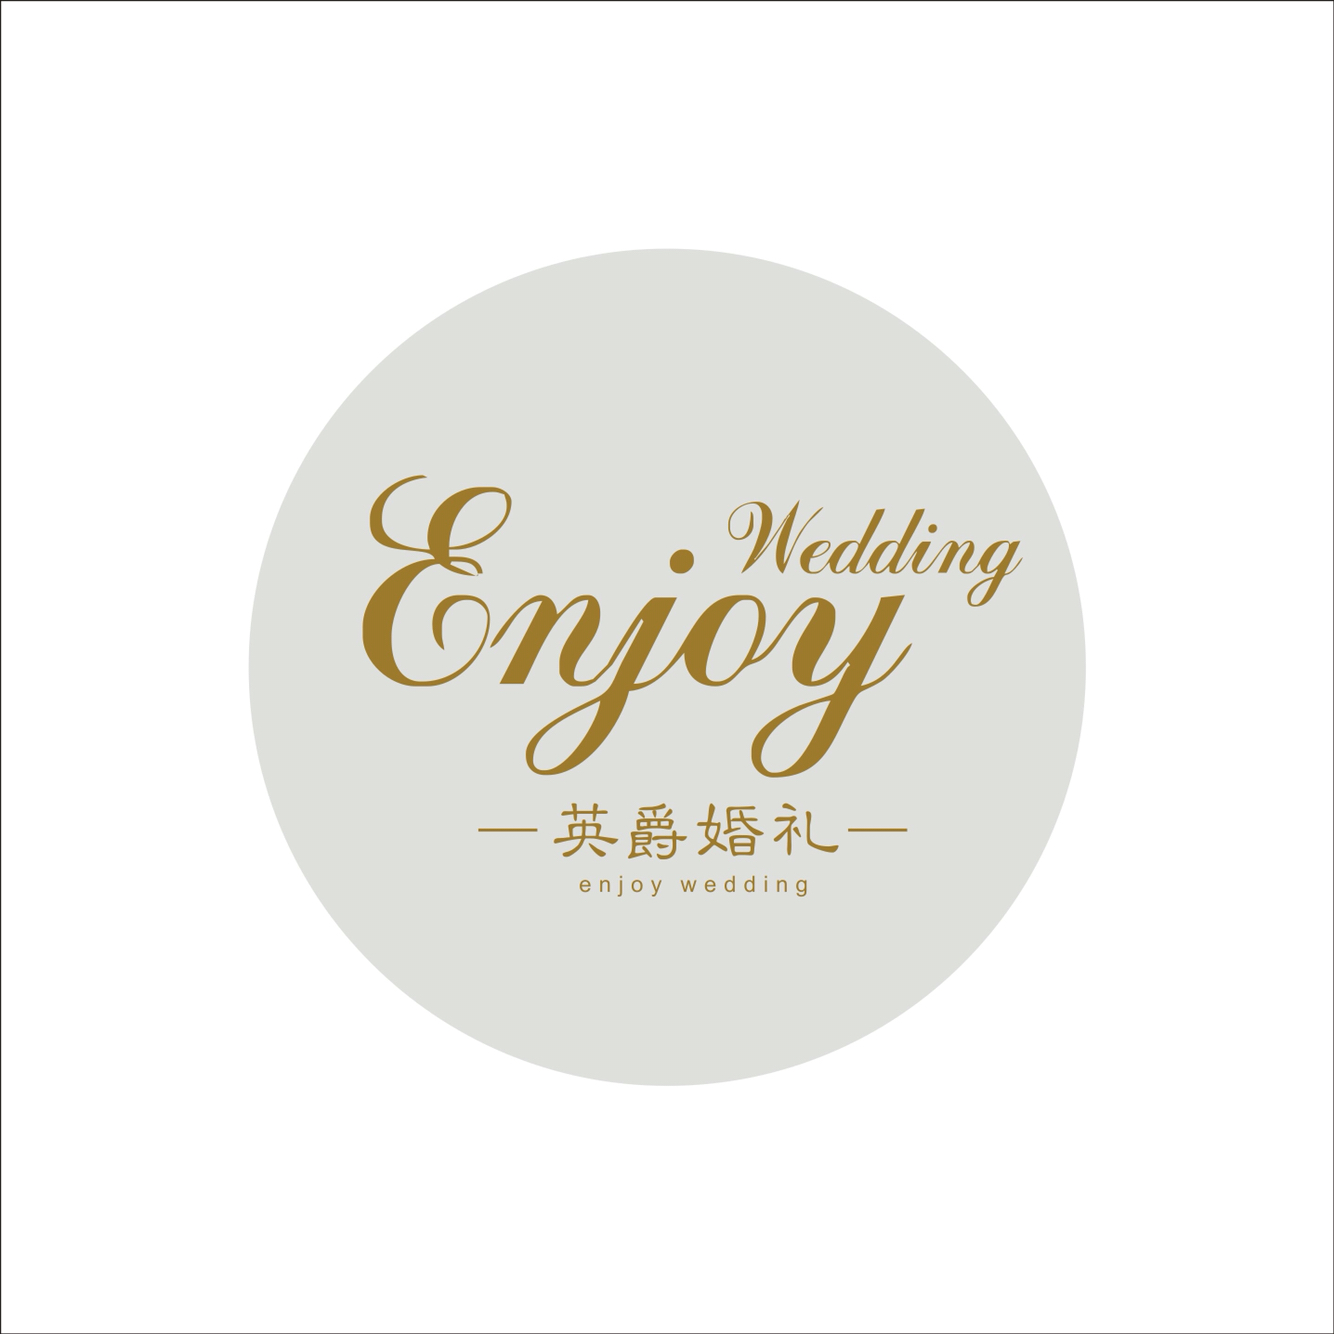 Enjoy Wedding